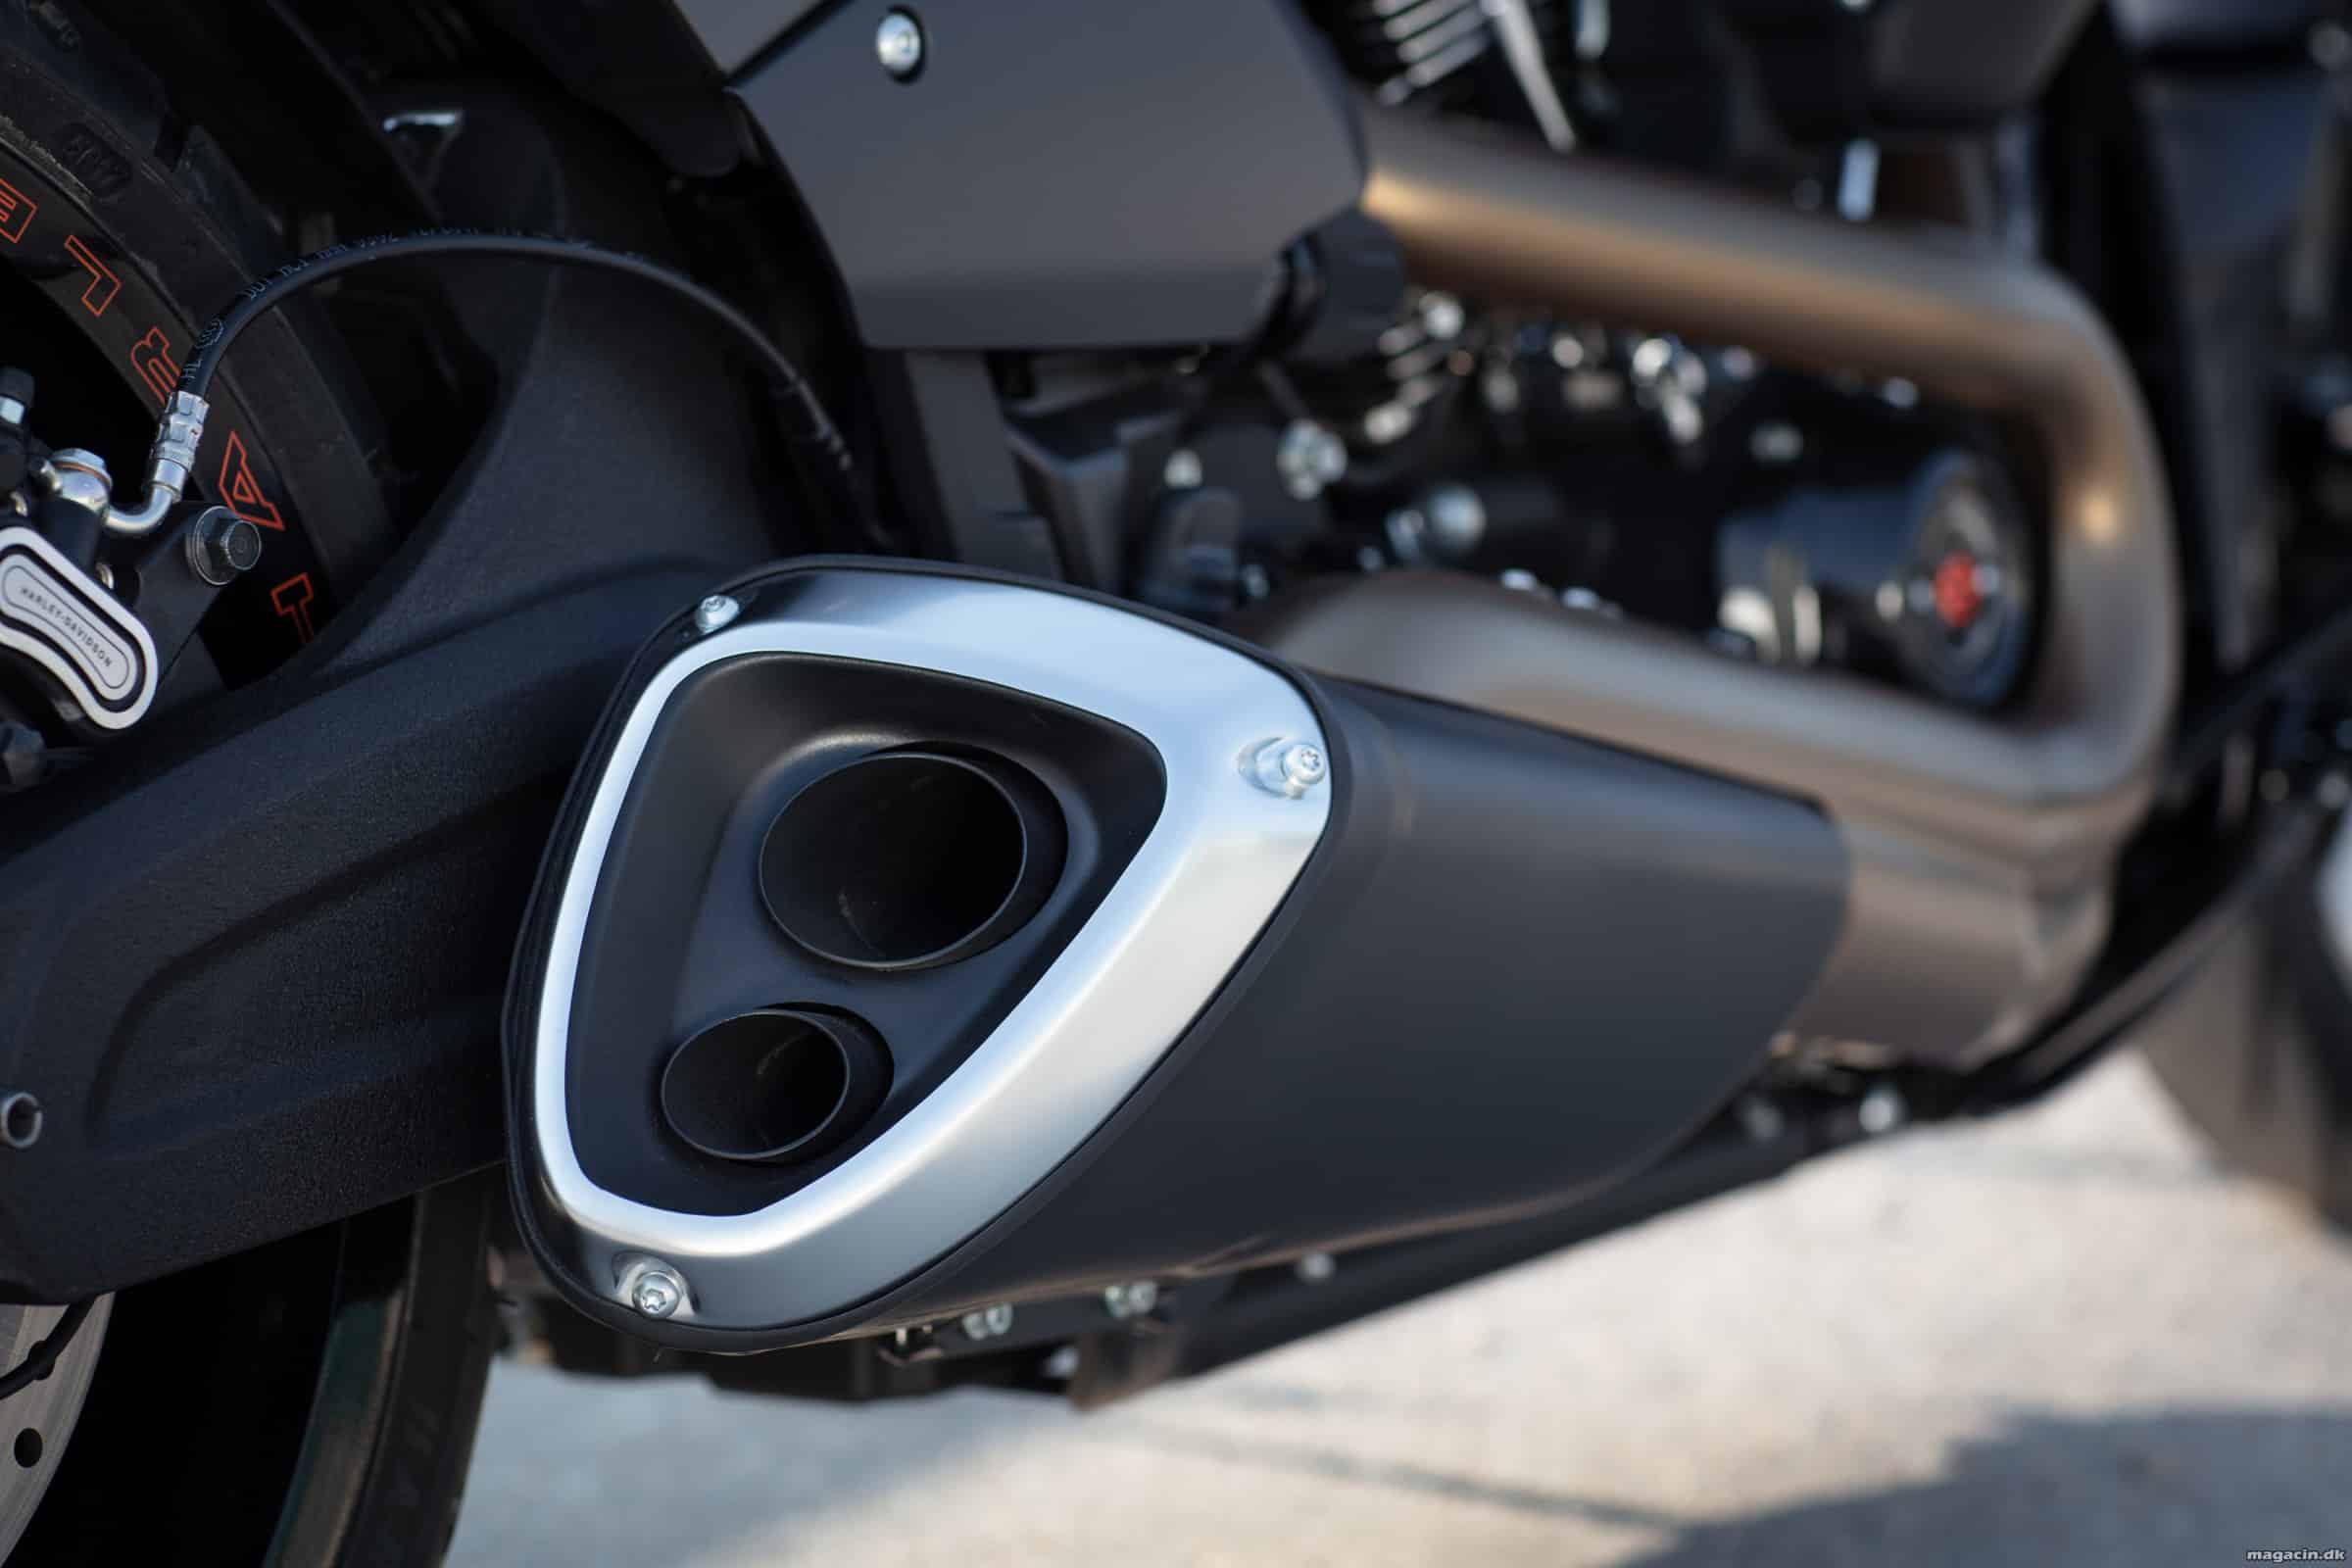 Test: 2018 Harley-Davidson FXDR 114 power-cruiser